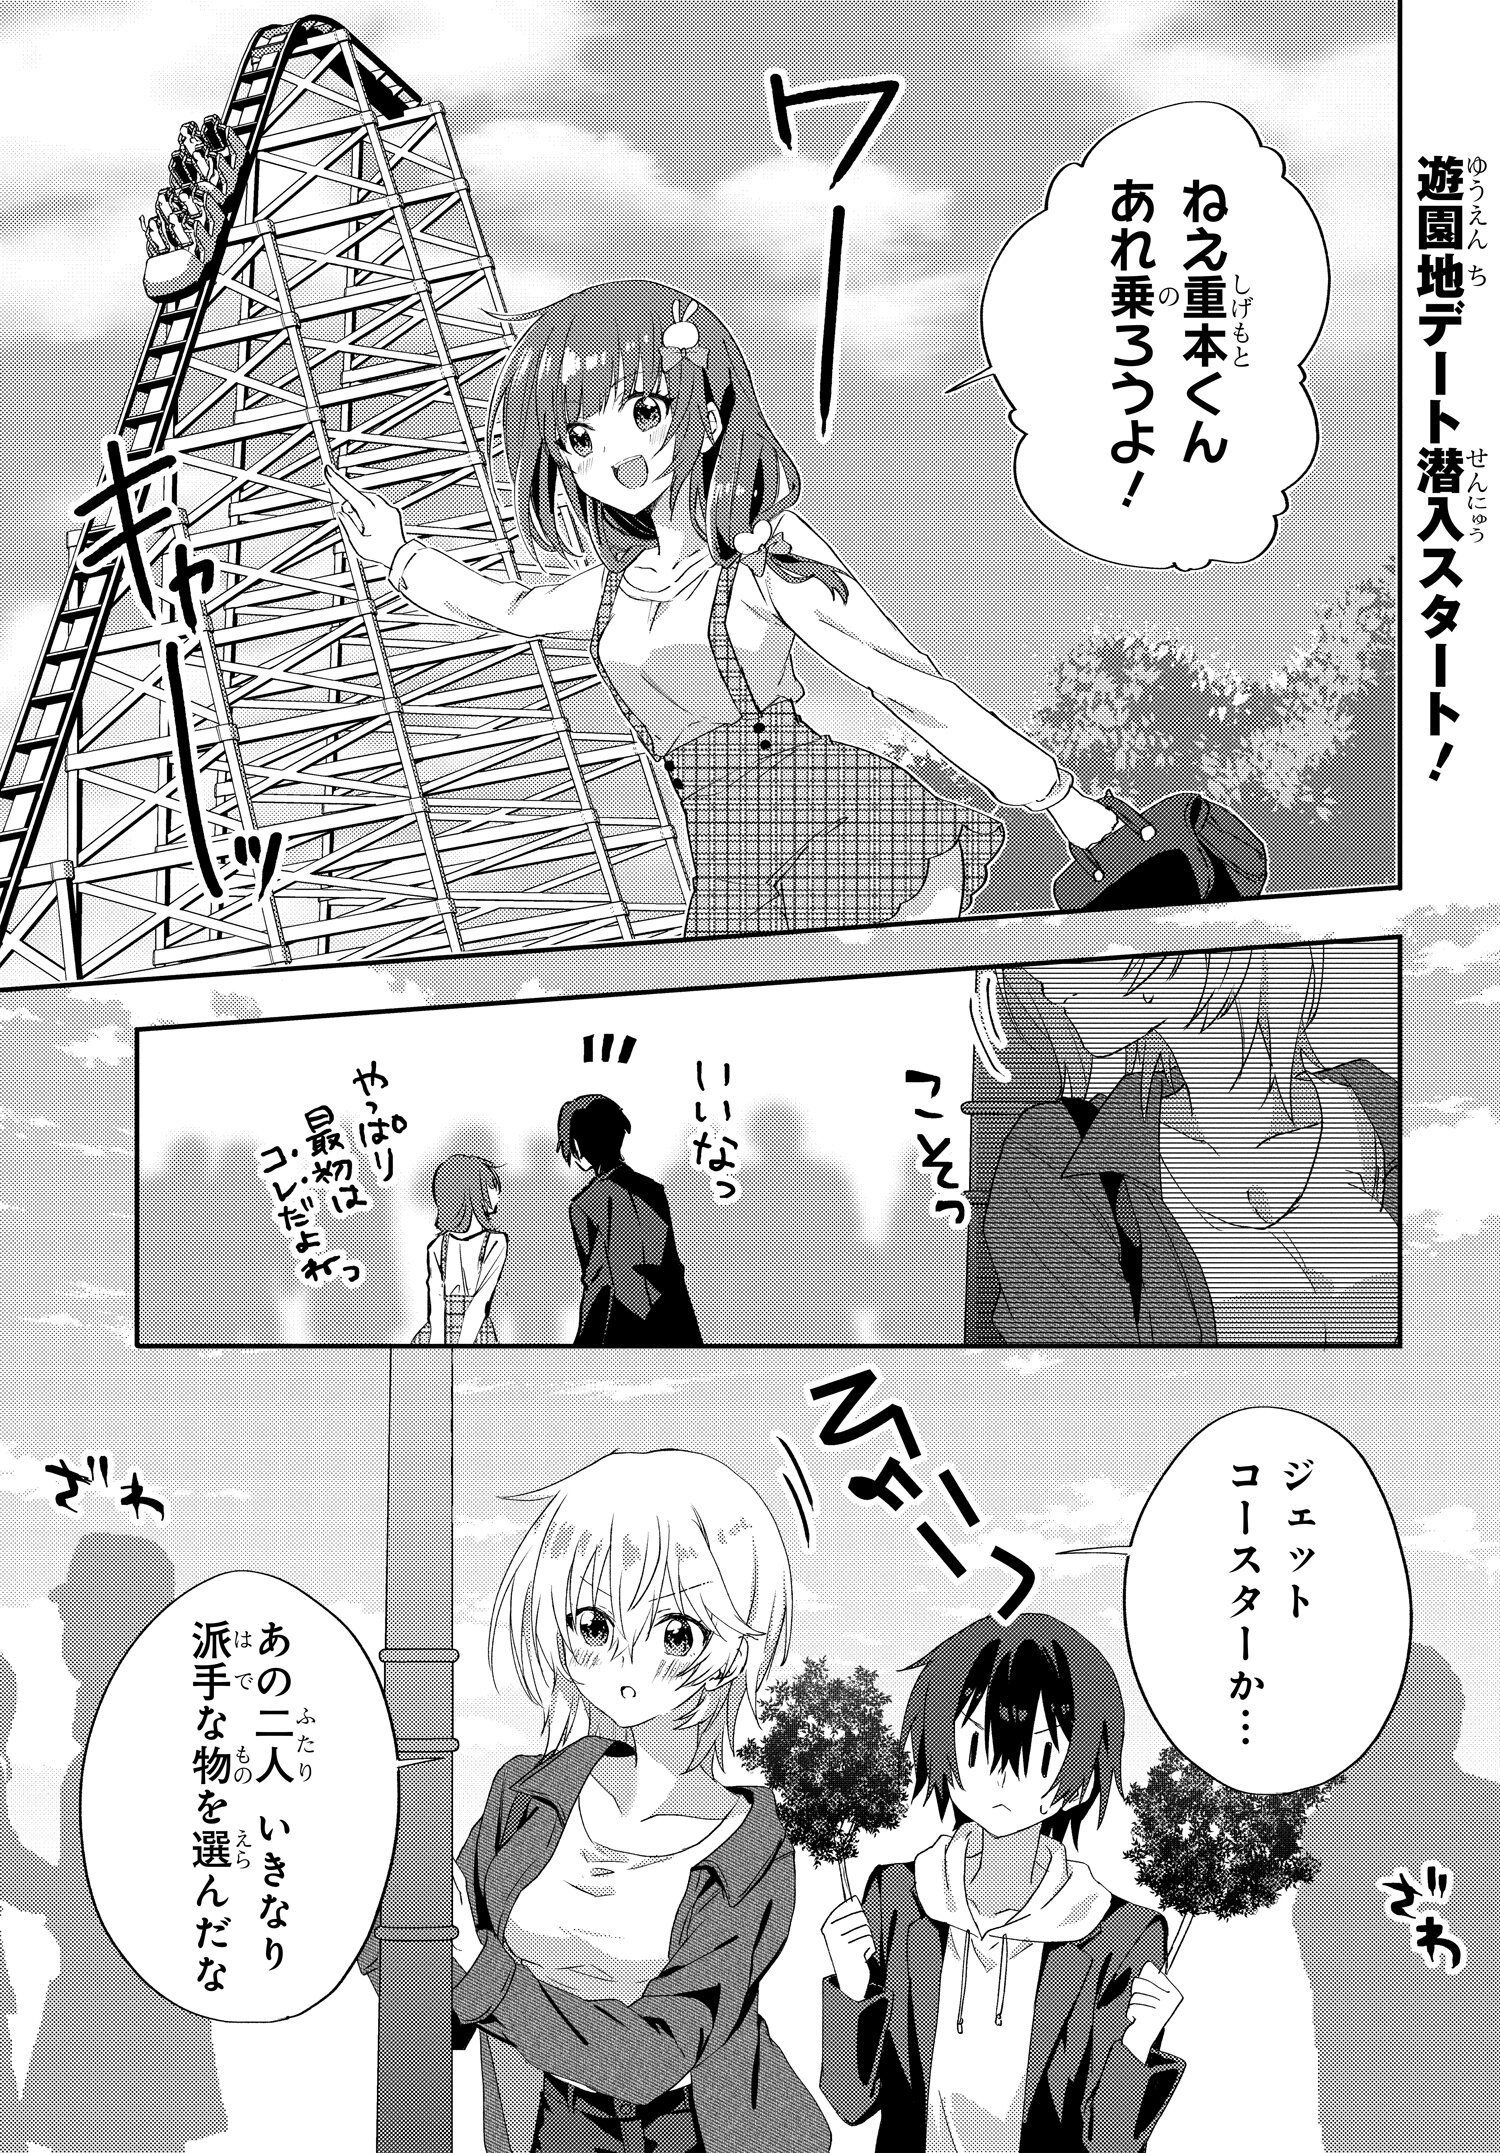 Romcom Manga ni Haitte Shimatta no de, Oshi no Make Heroine wo Zenryoku de Shiawase ni suru - Chapter 7.1 - Page 1